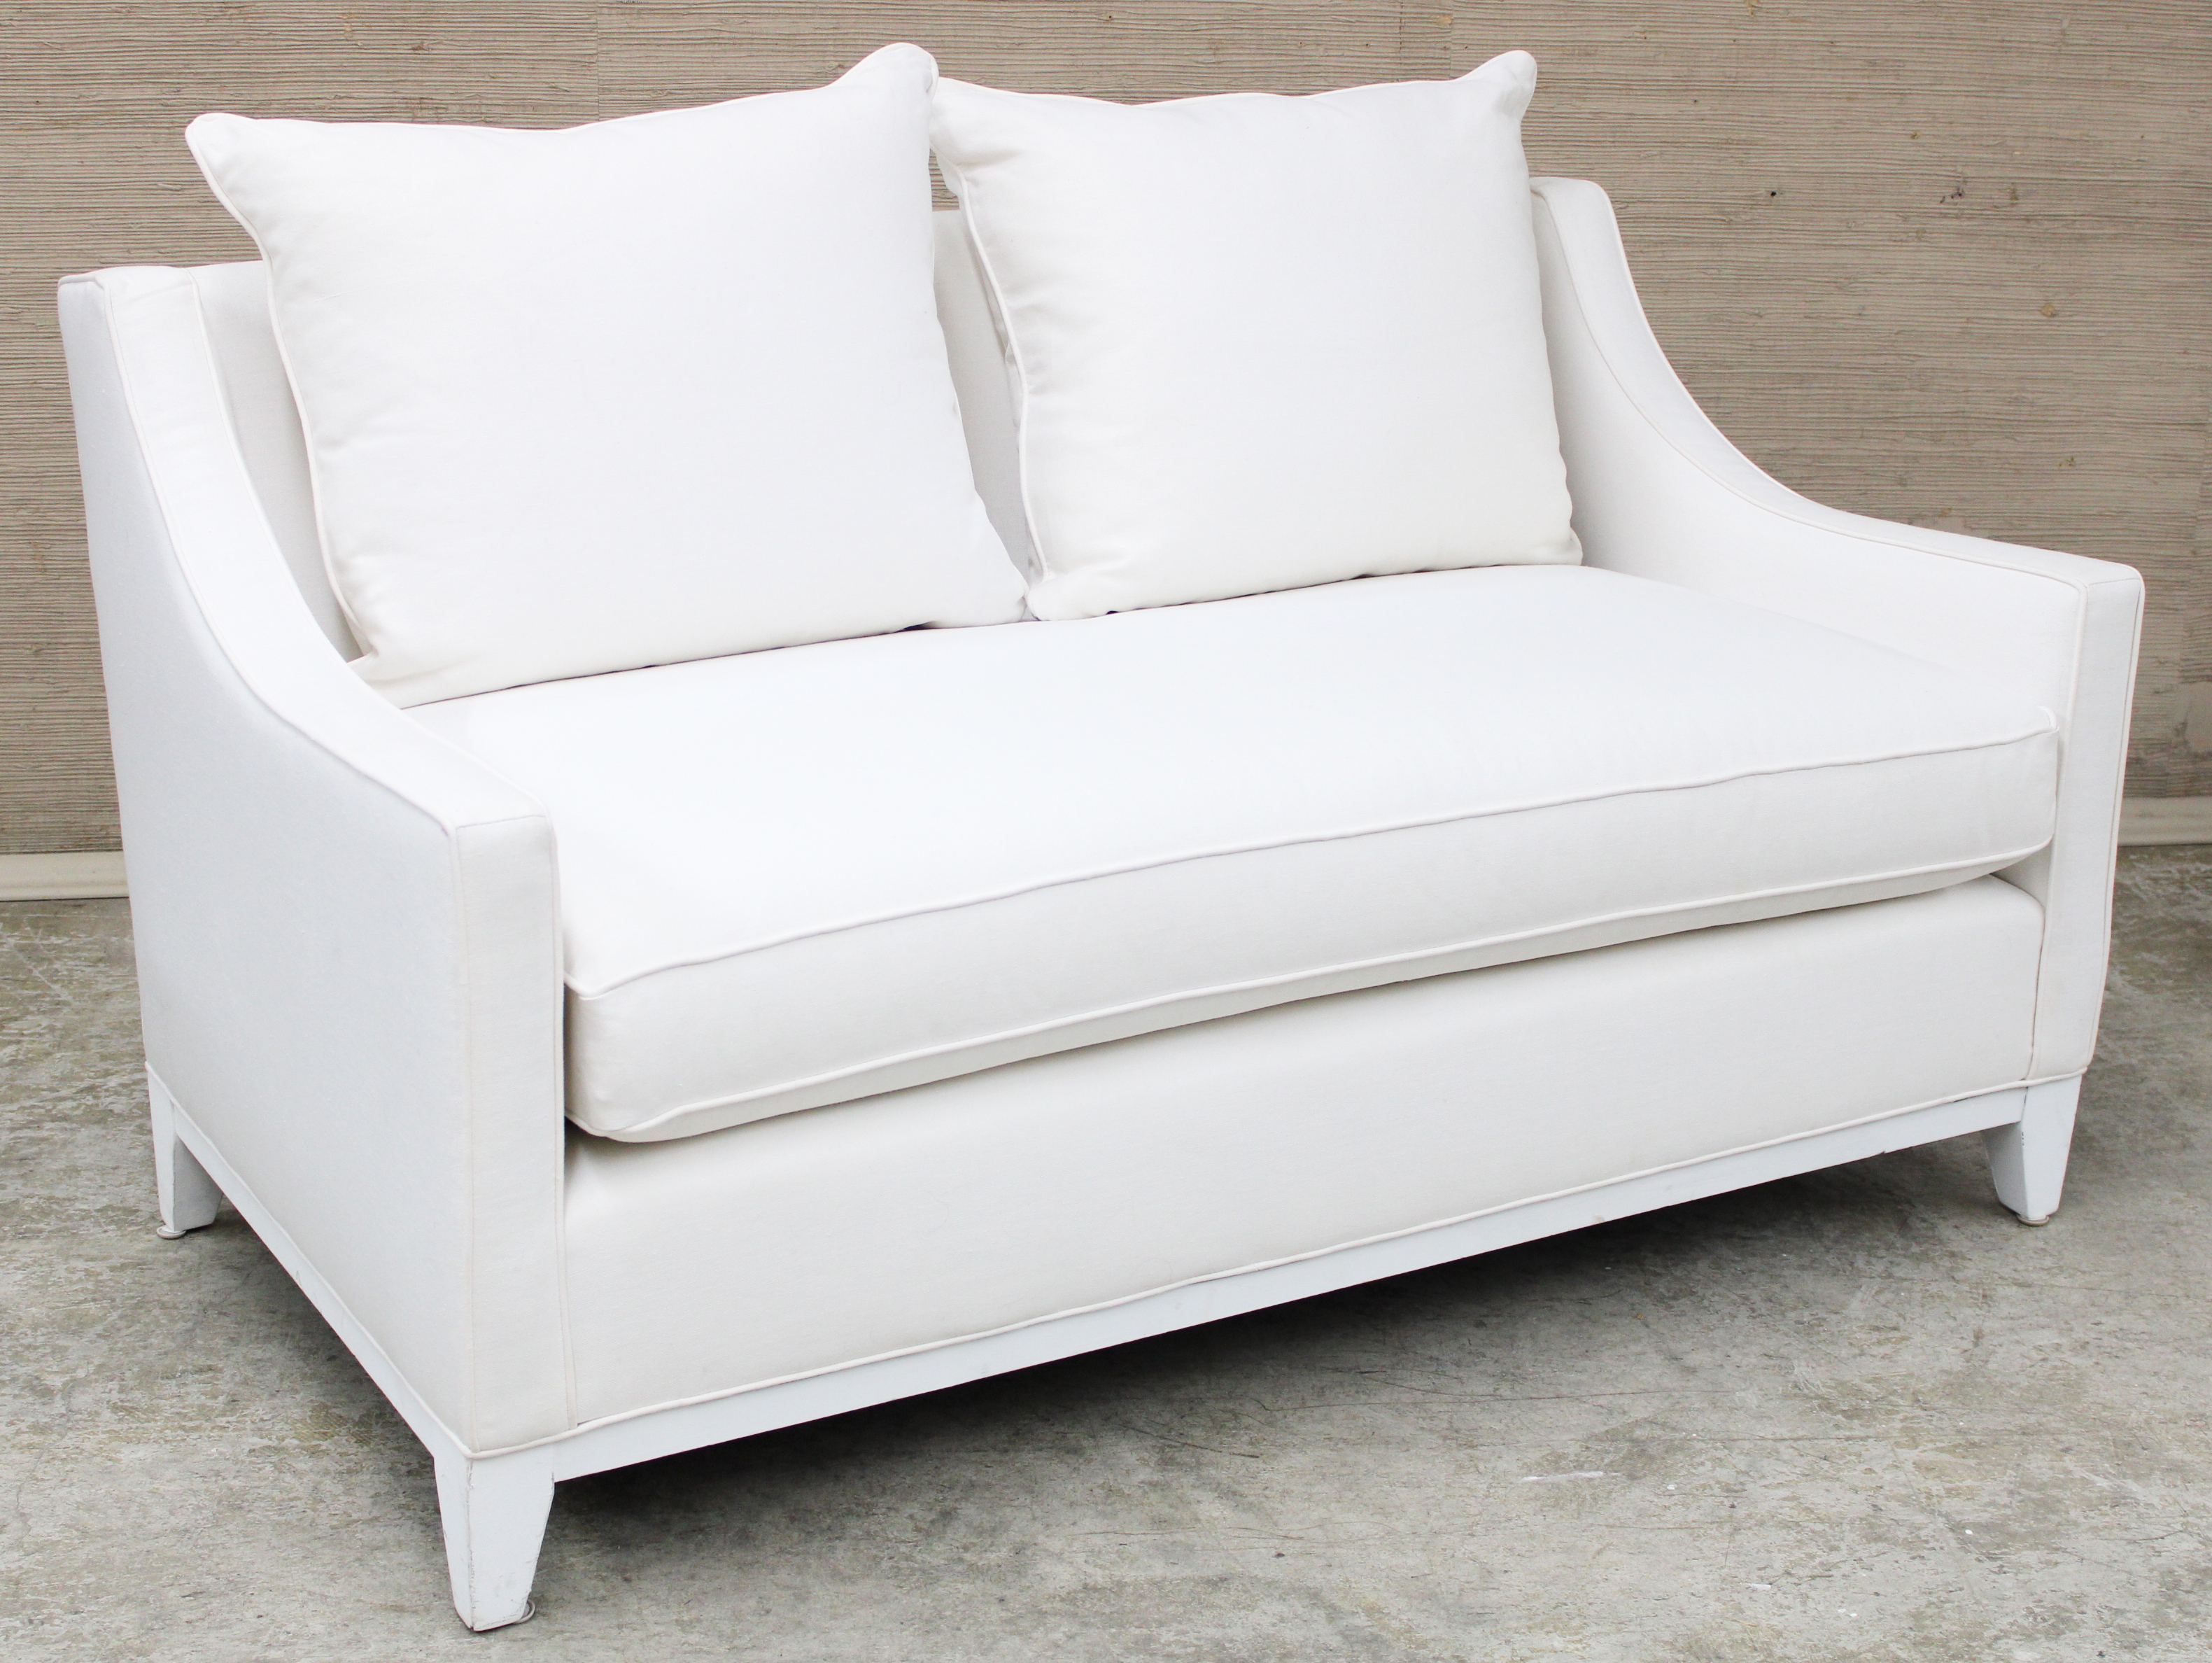 WILLIAMS SONOMA Upholstered white